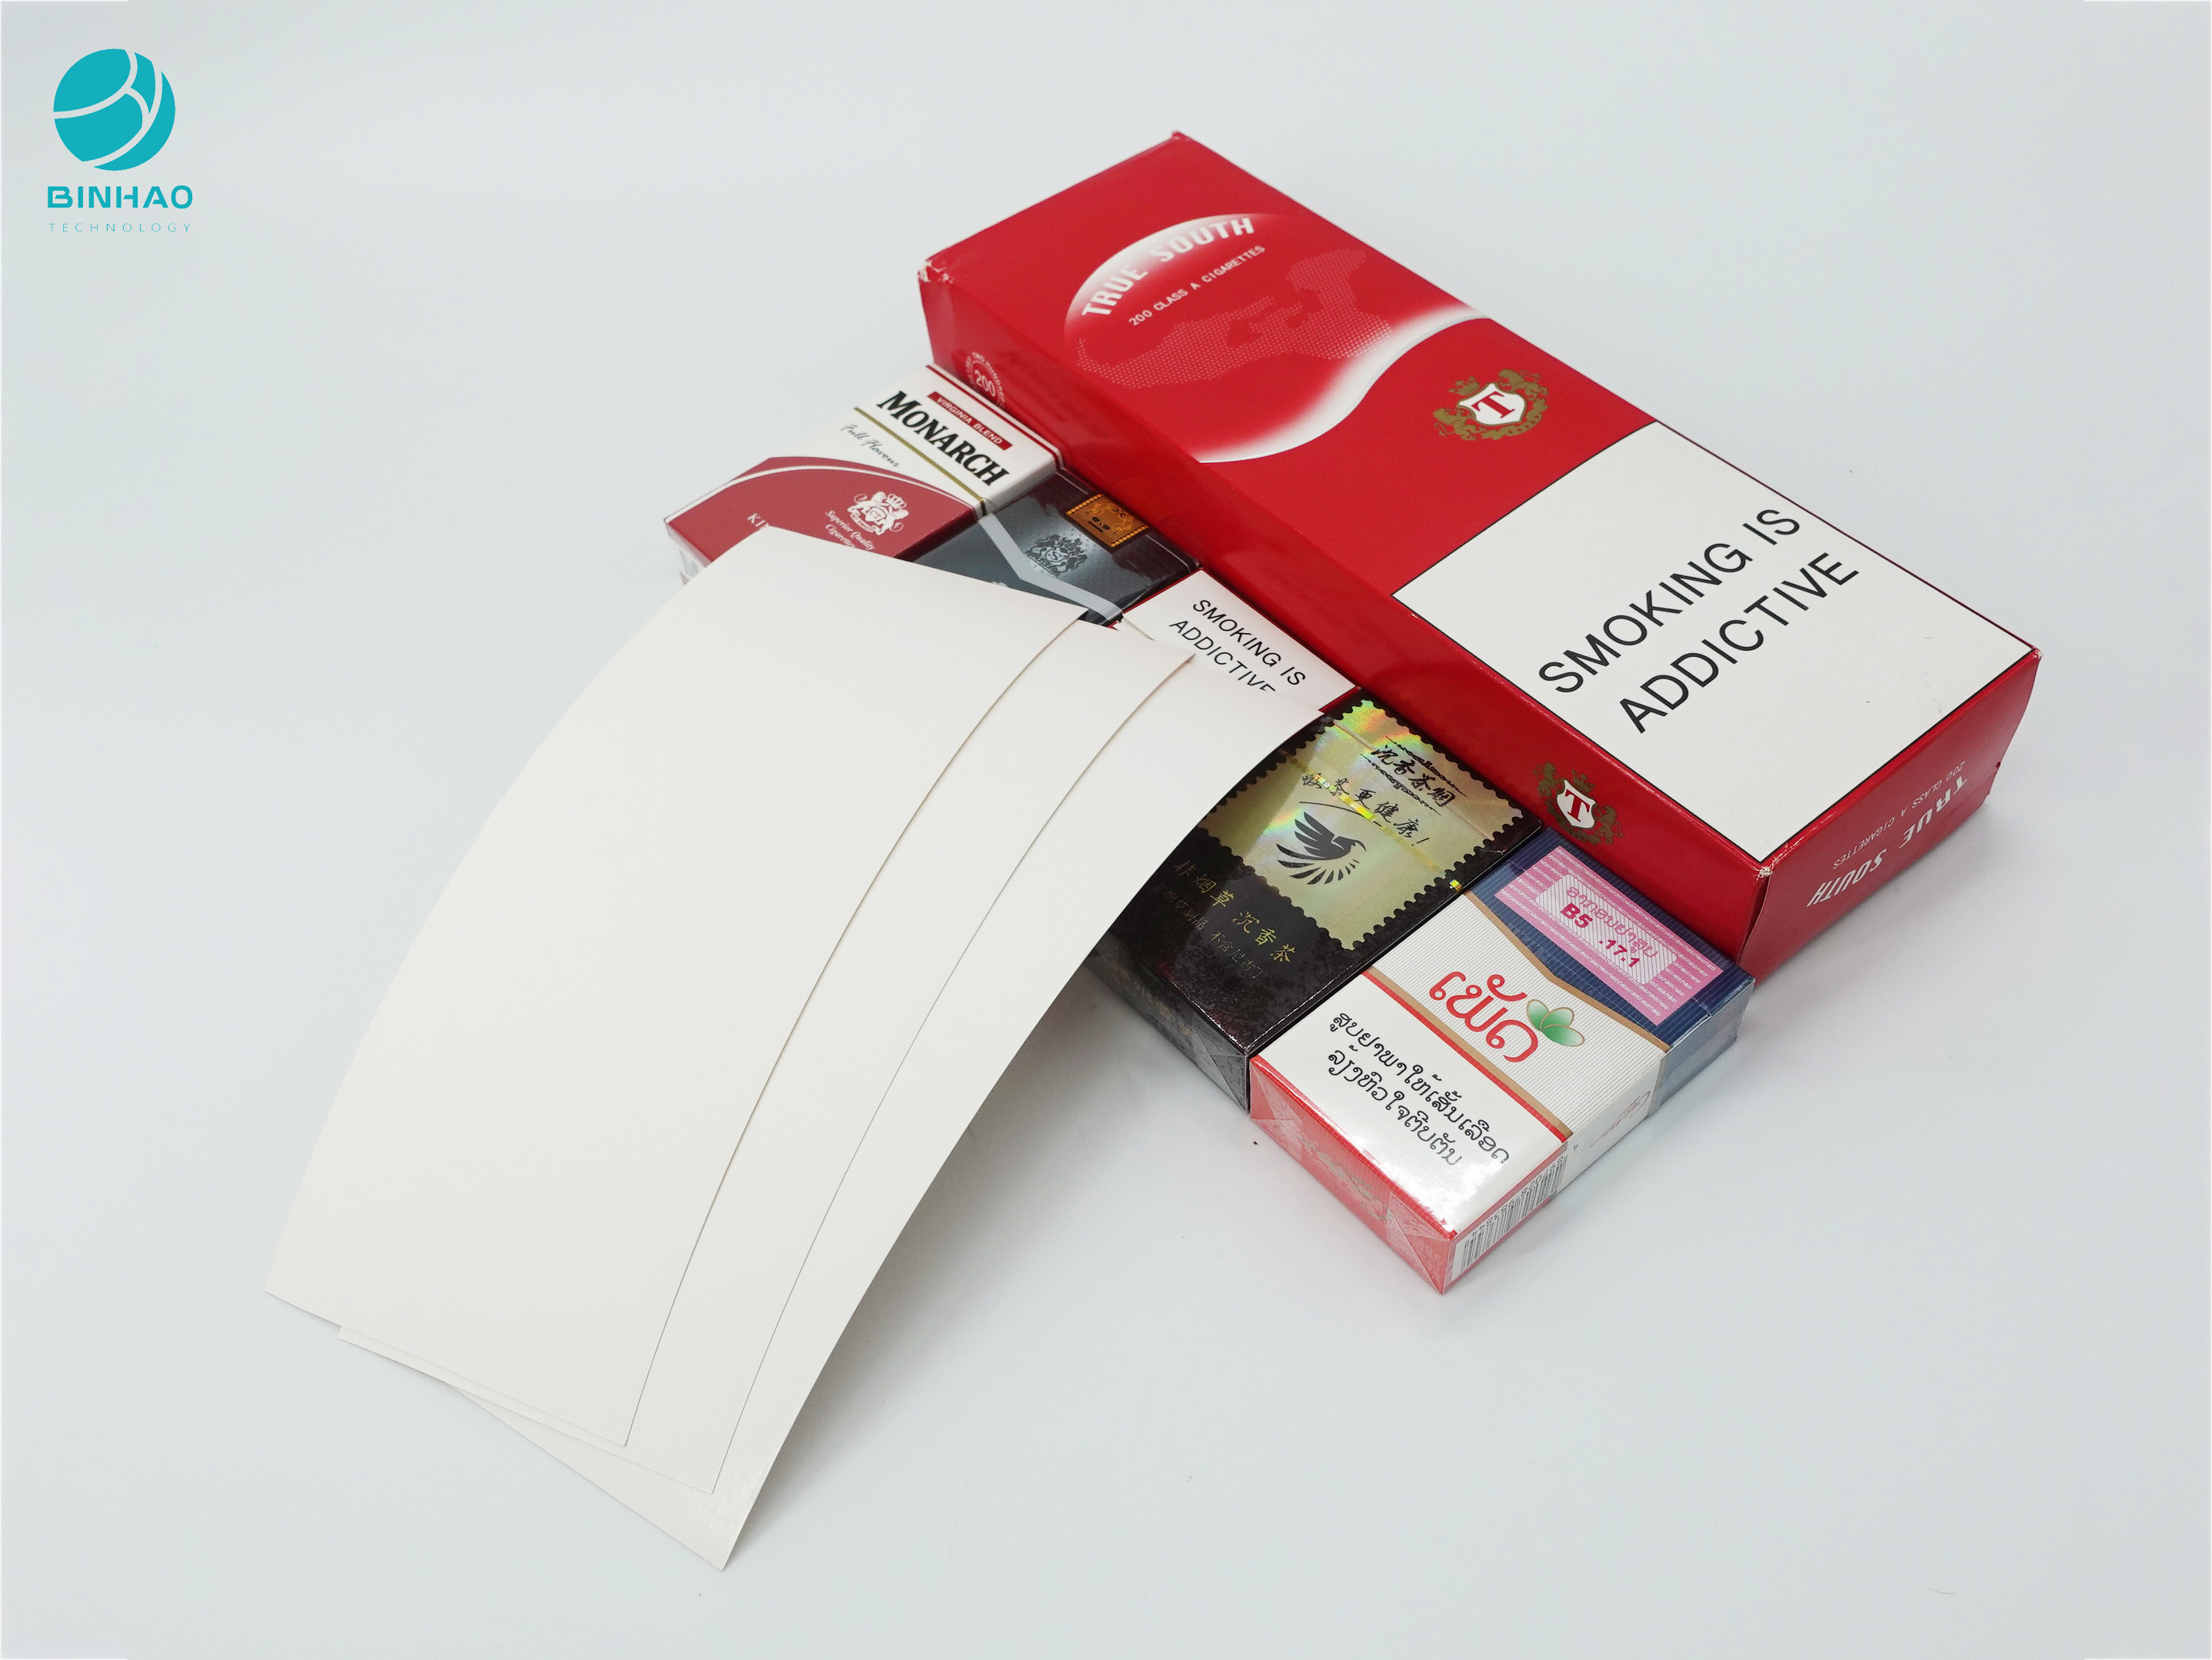 Kotak Karton Paket Rokok Dengan Pencetakan Khusus Hot Stamping